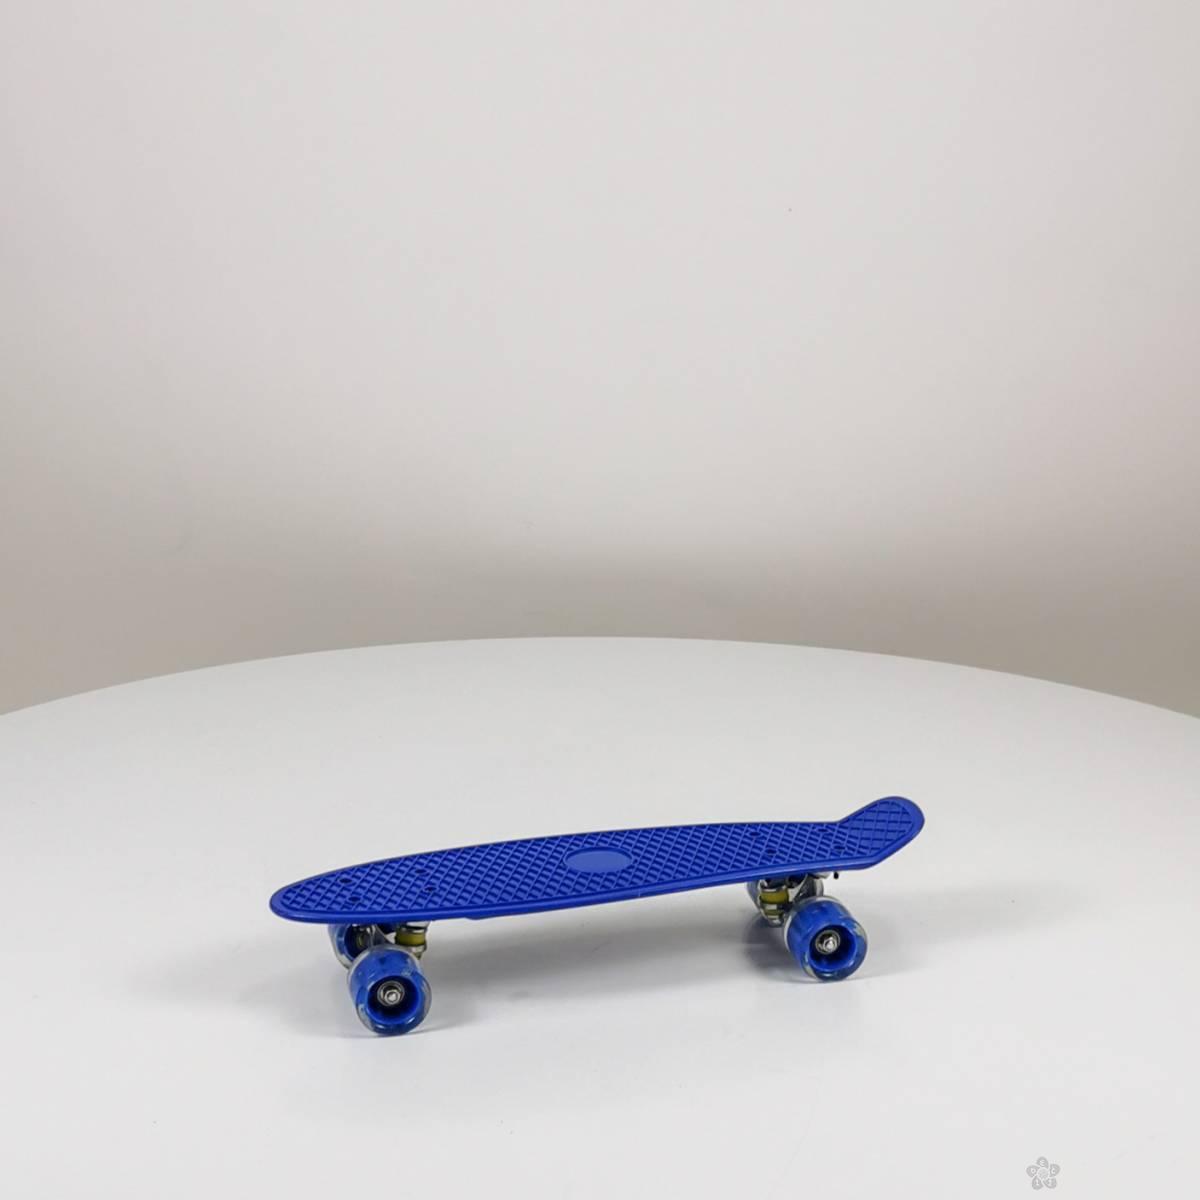 Dečiji skejtbord Simple board Model 683 